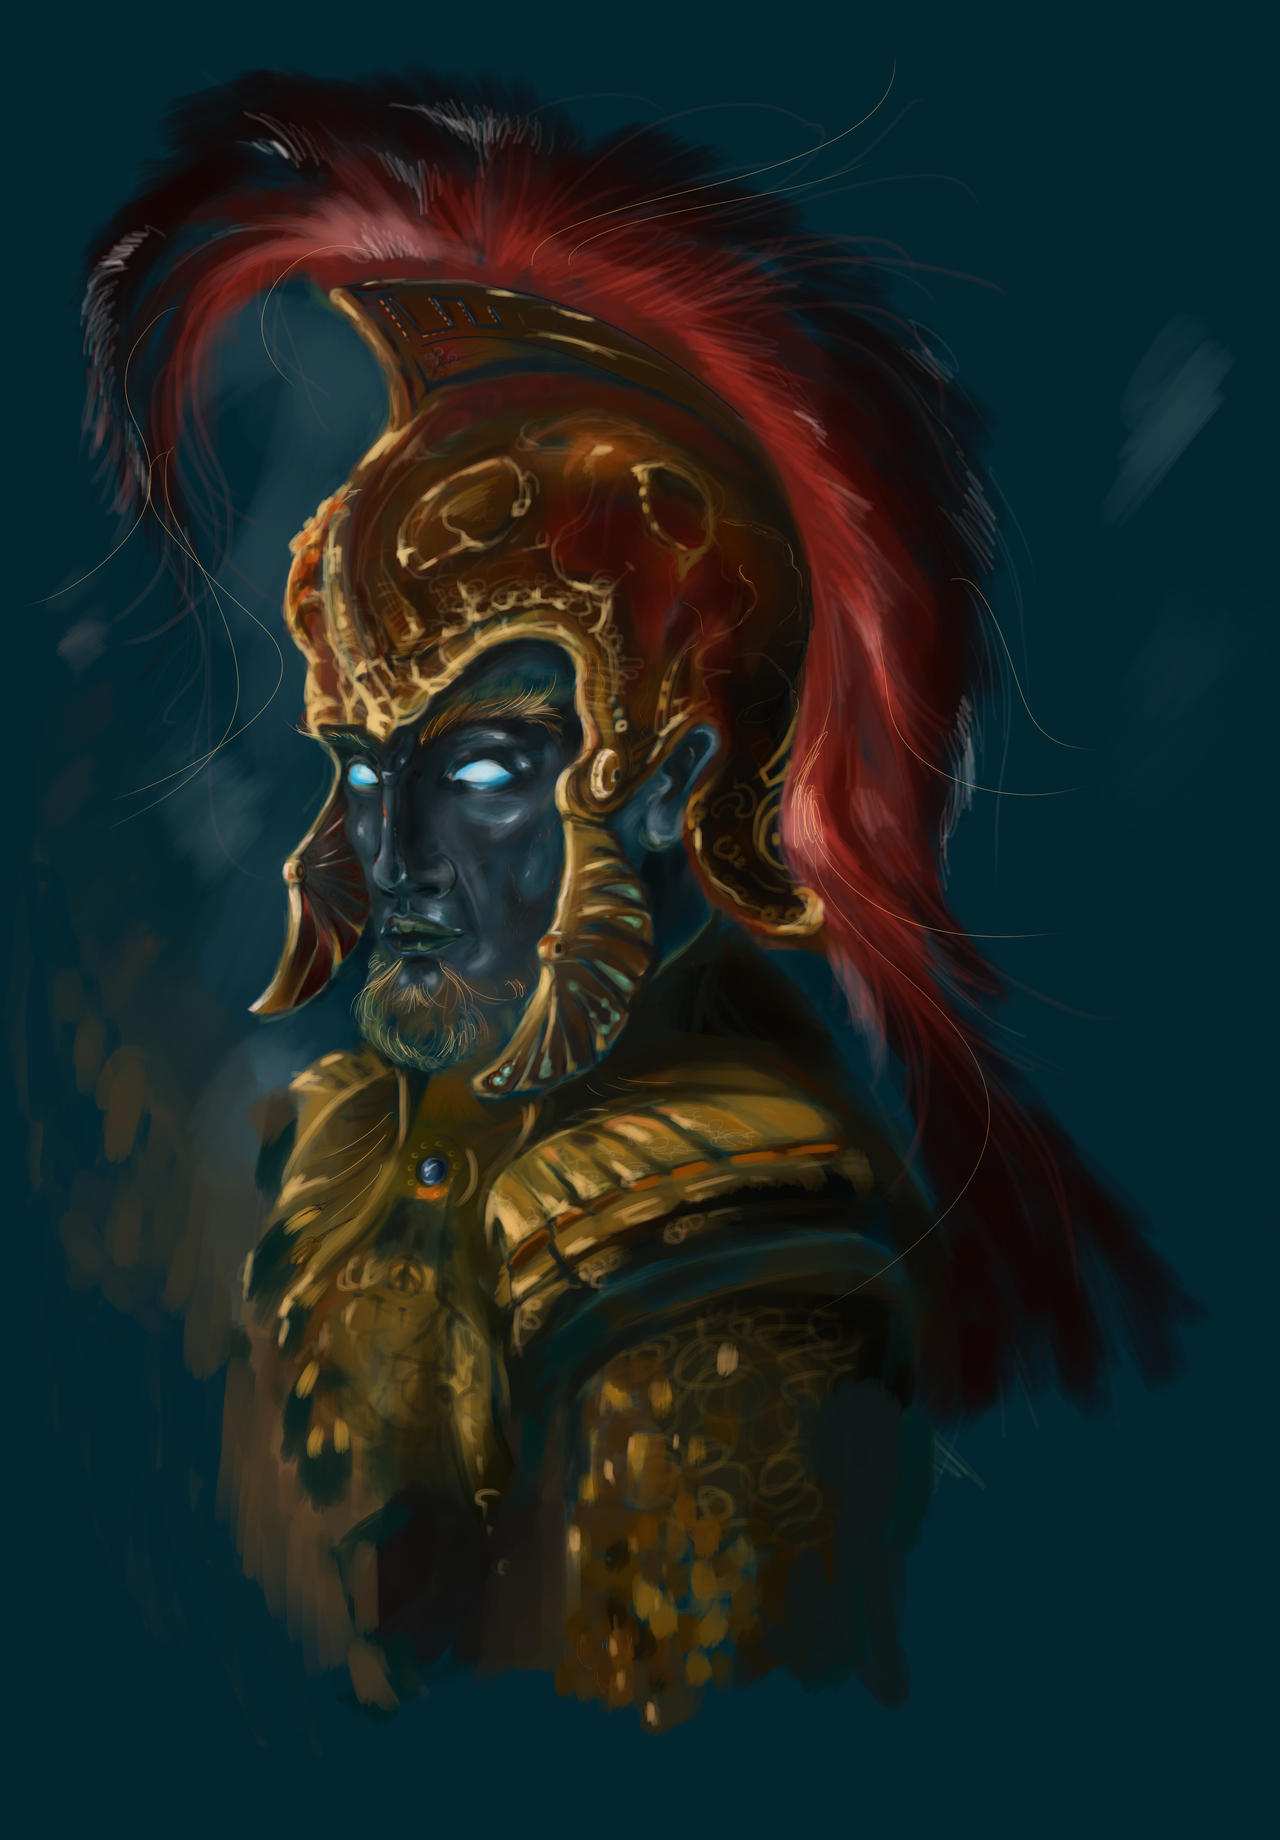 Undead Warrior-work in progress by Nerupa on DeviantArt